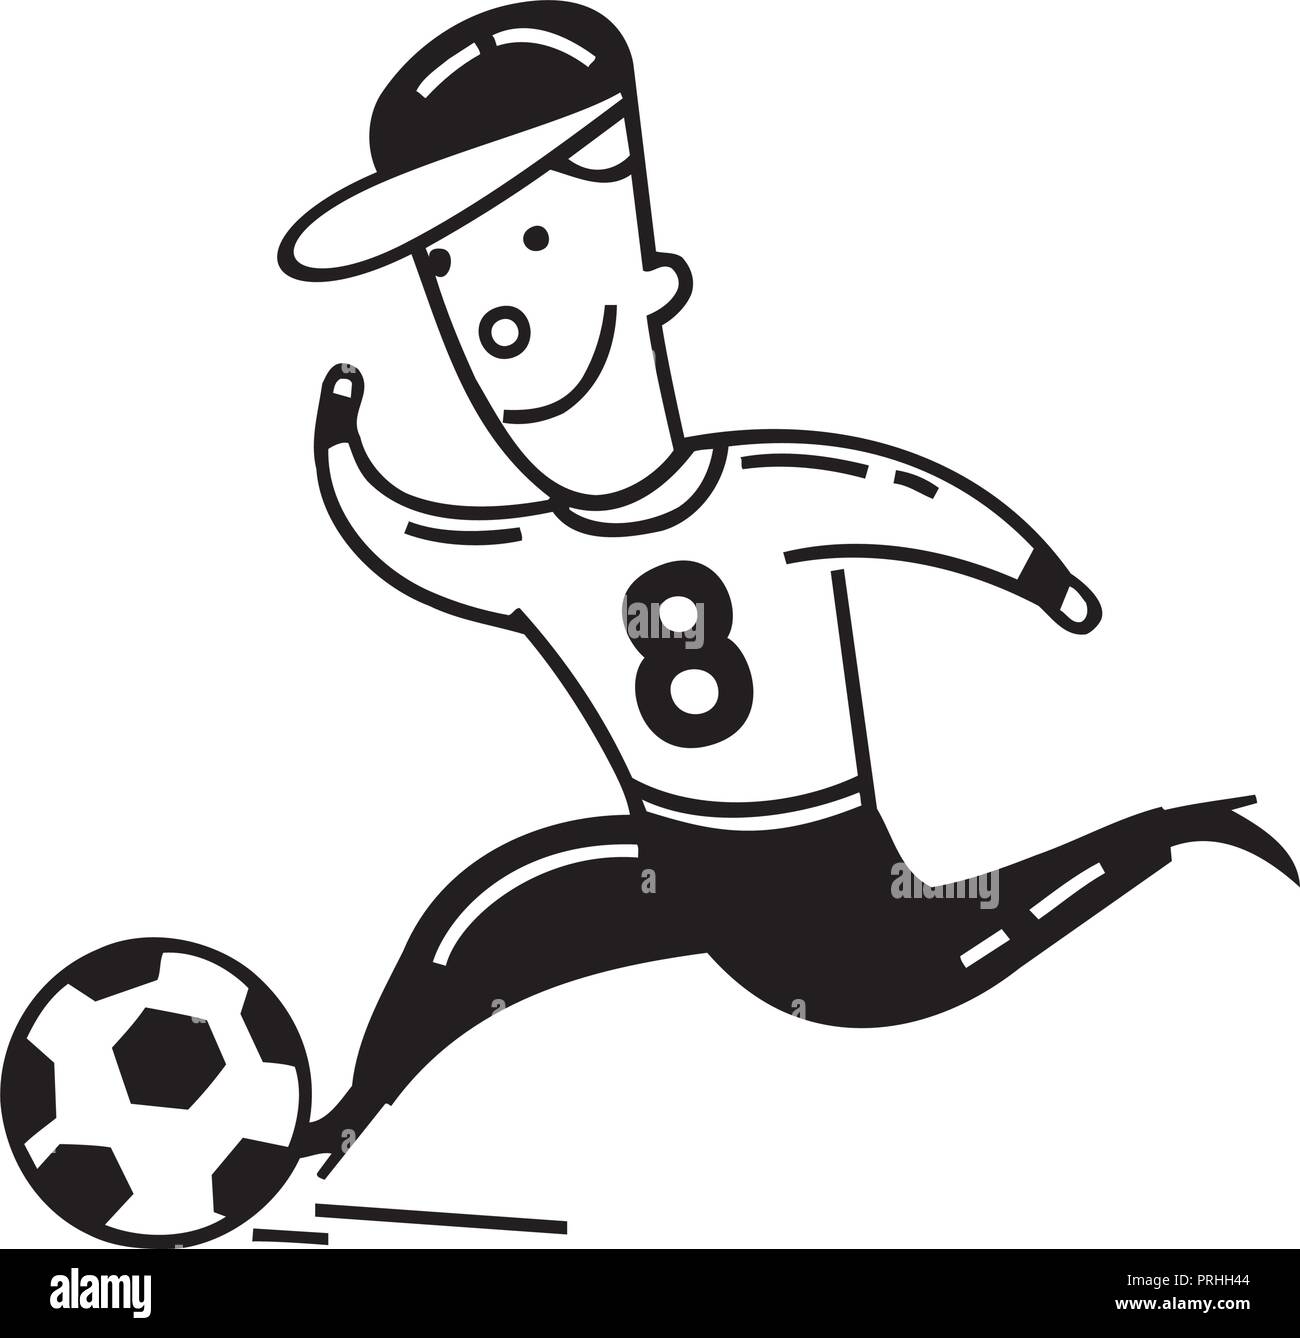 Juego De Fútbol Muchacho De La Historieta Ilustraciones svg, vectoriales,  clip art vectorizado libre de derechos. Image 27657265